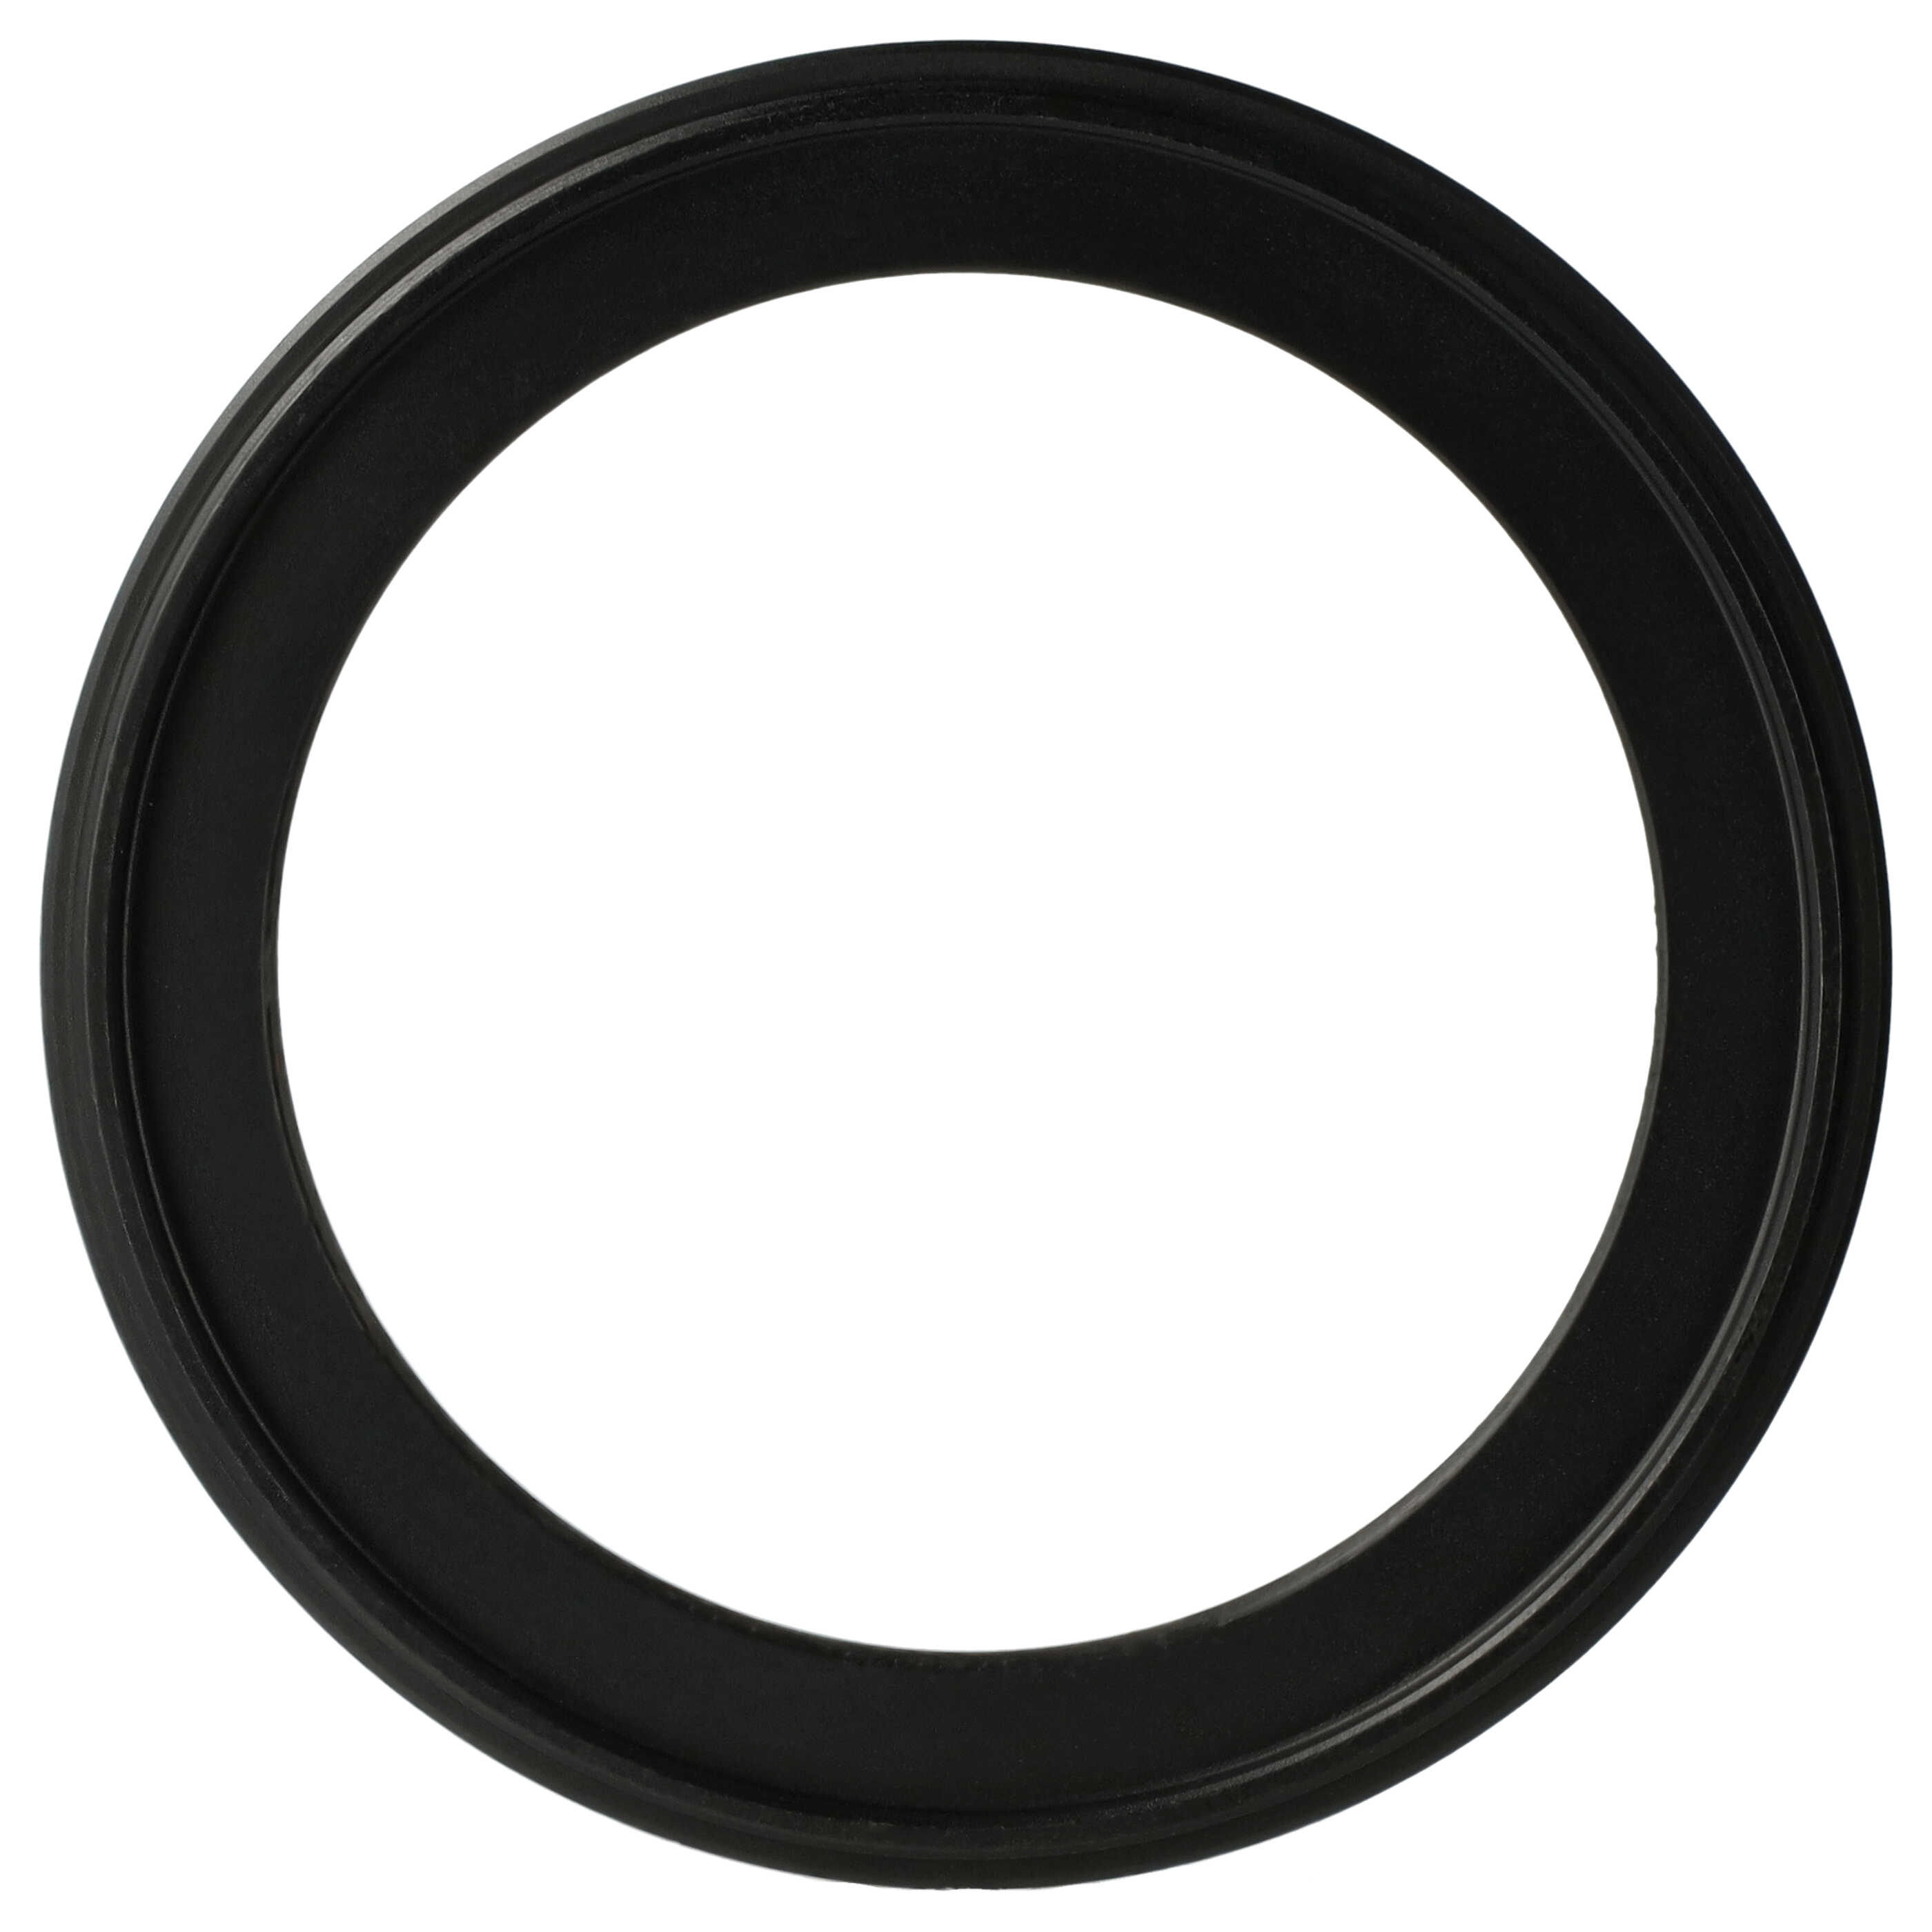 Redukcja filtrowa adapter Step-Down 62 mm - 49 mm pasująca do obiektywu - metal, czarny